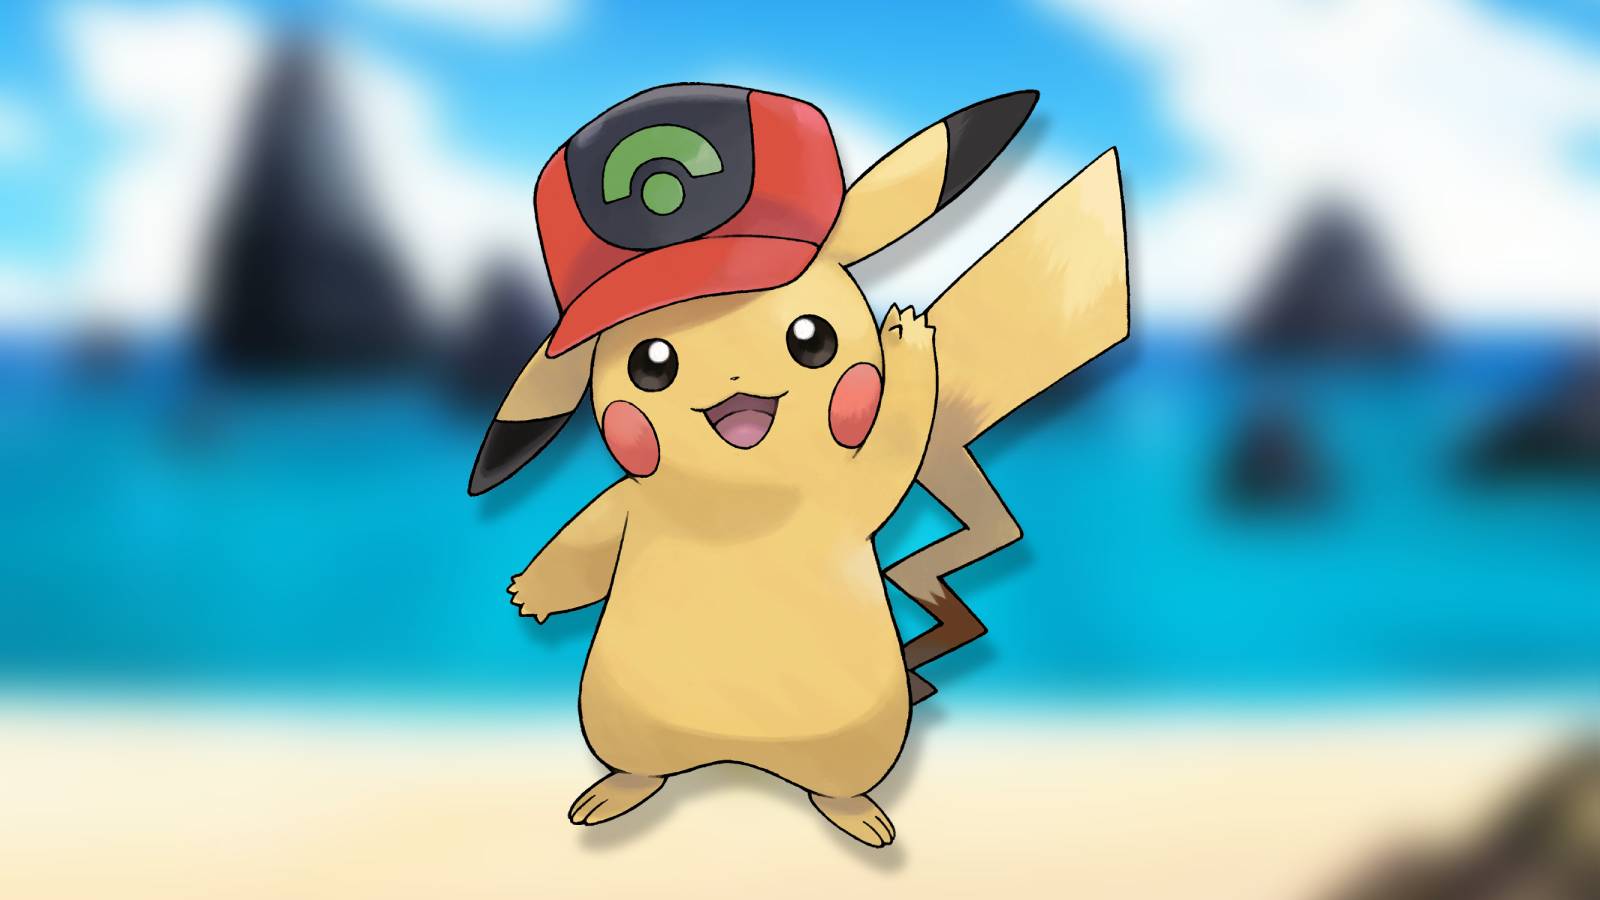 A Pikachu is shown on a beach